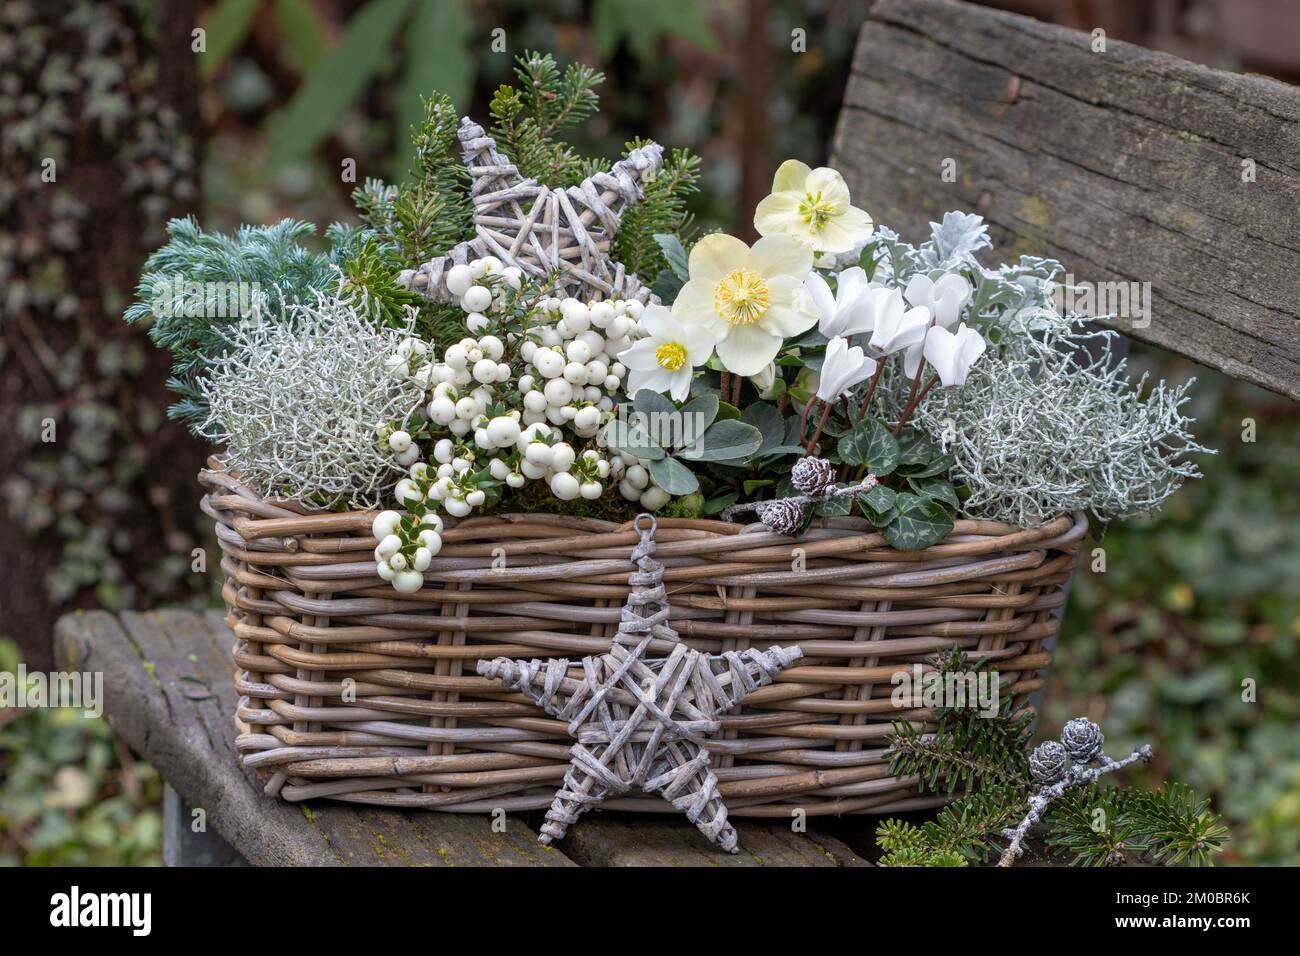 niger helleborus, brughiera bianca, fiore di ciclamino e cespuglio a cuscino nel cesto nel giardino d'inverno Foto Stock